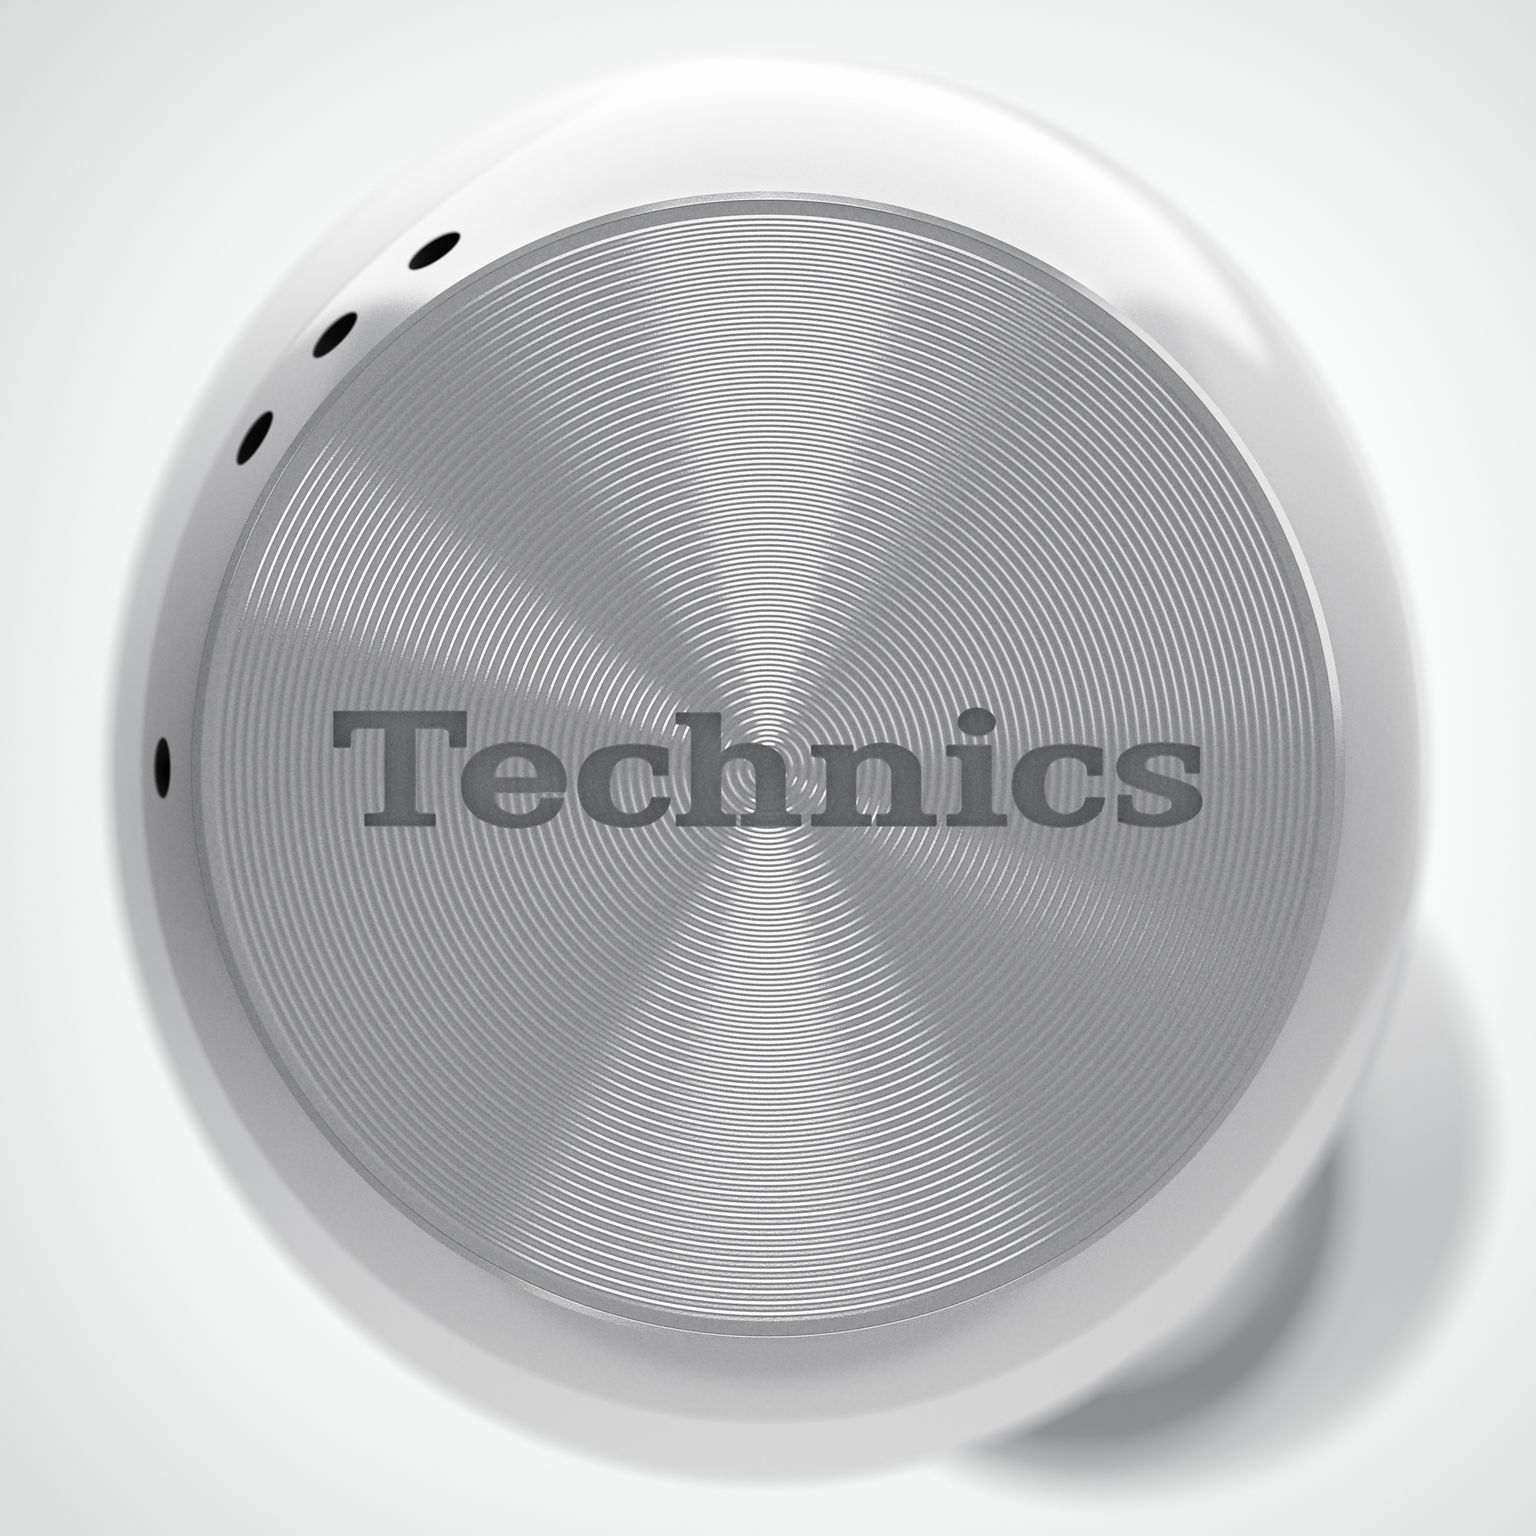 Technics EAH-AZ70W | iF WORLD DESIGN GUIDE